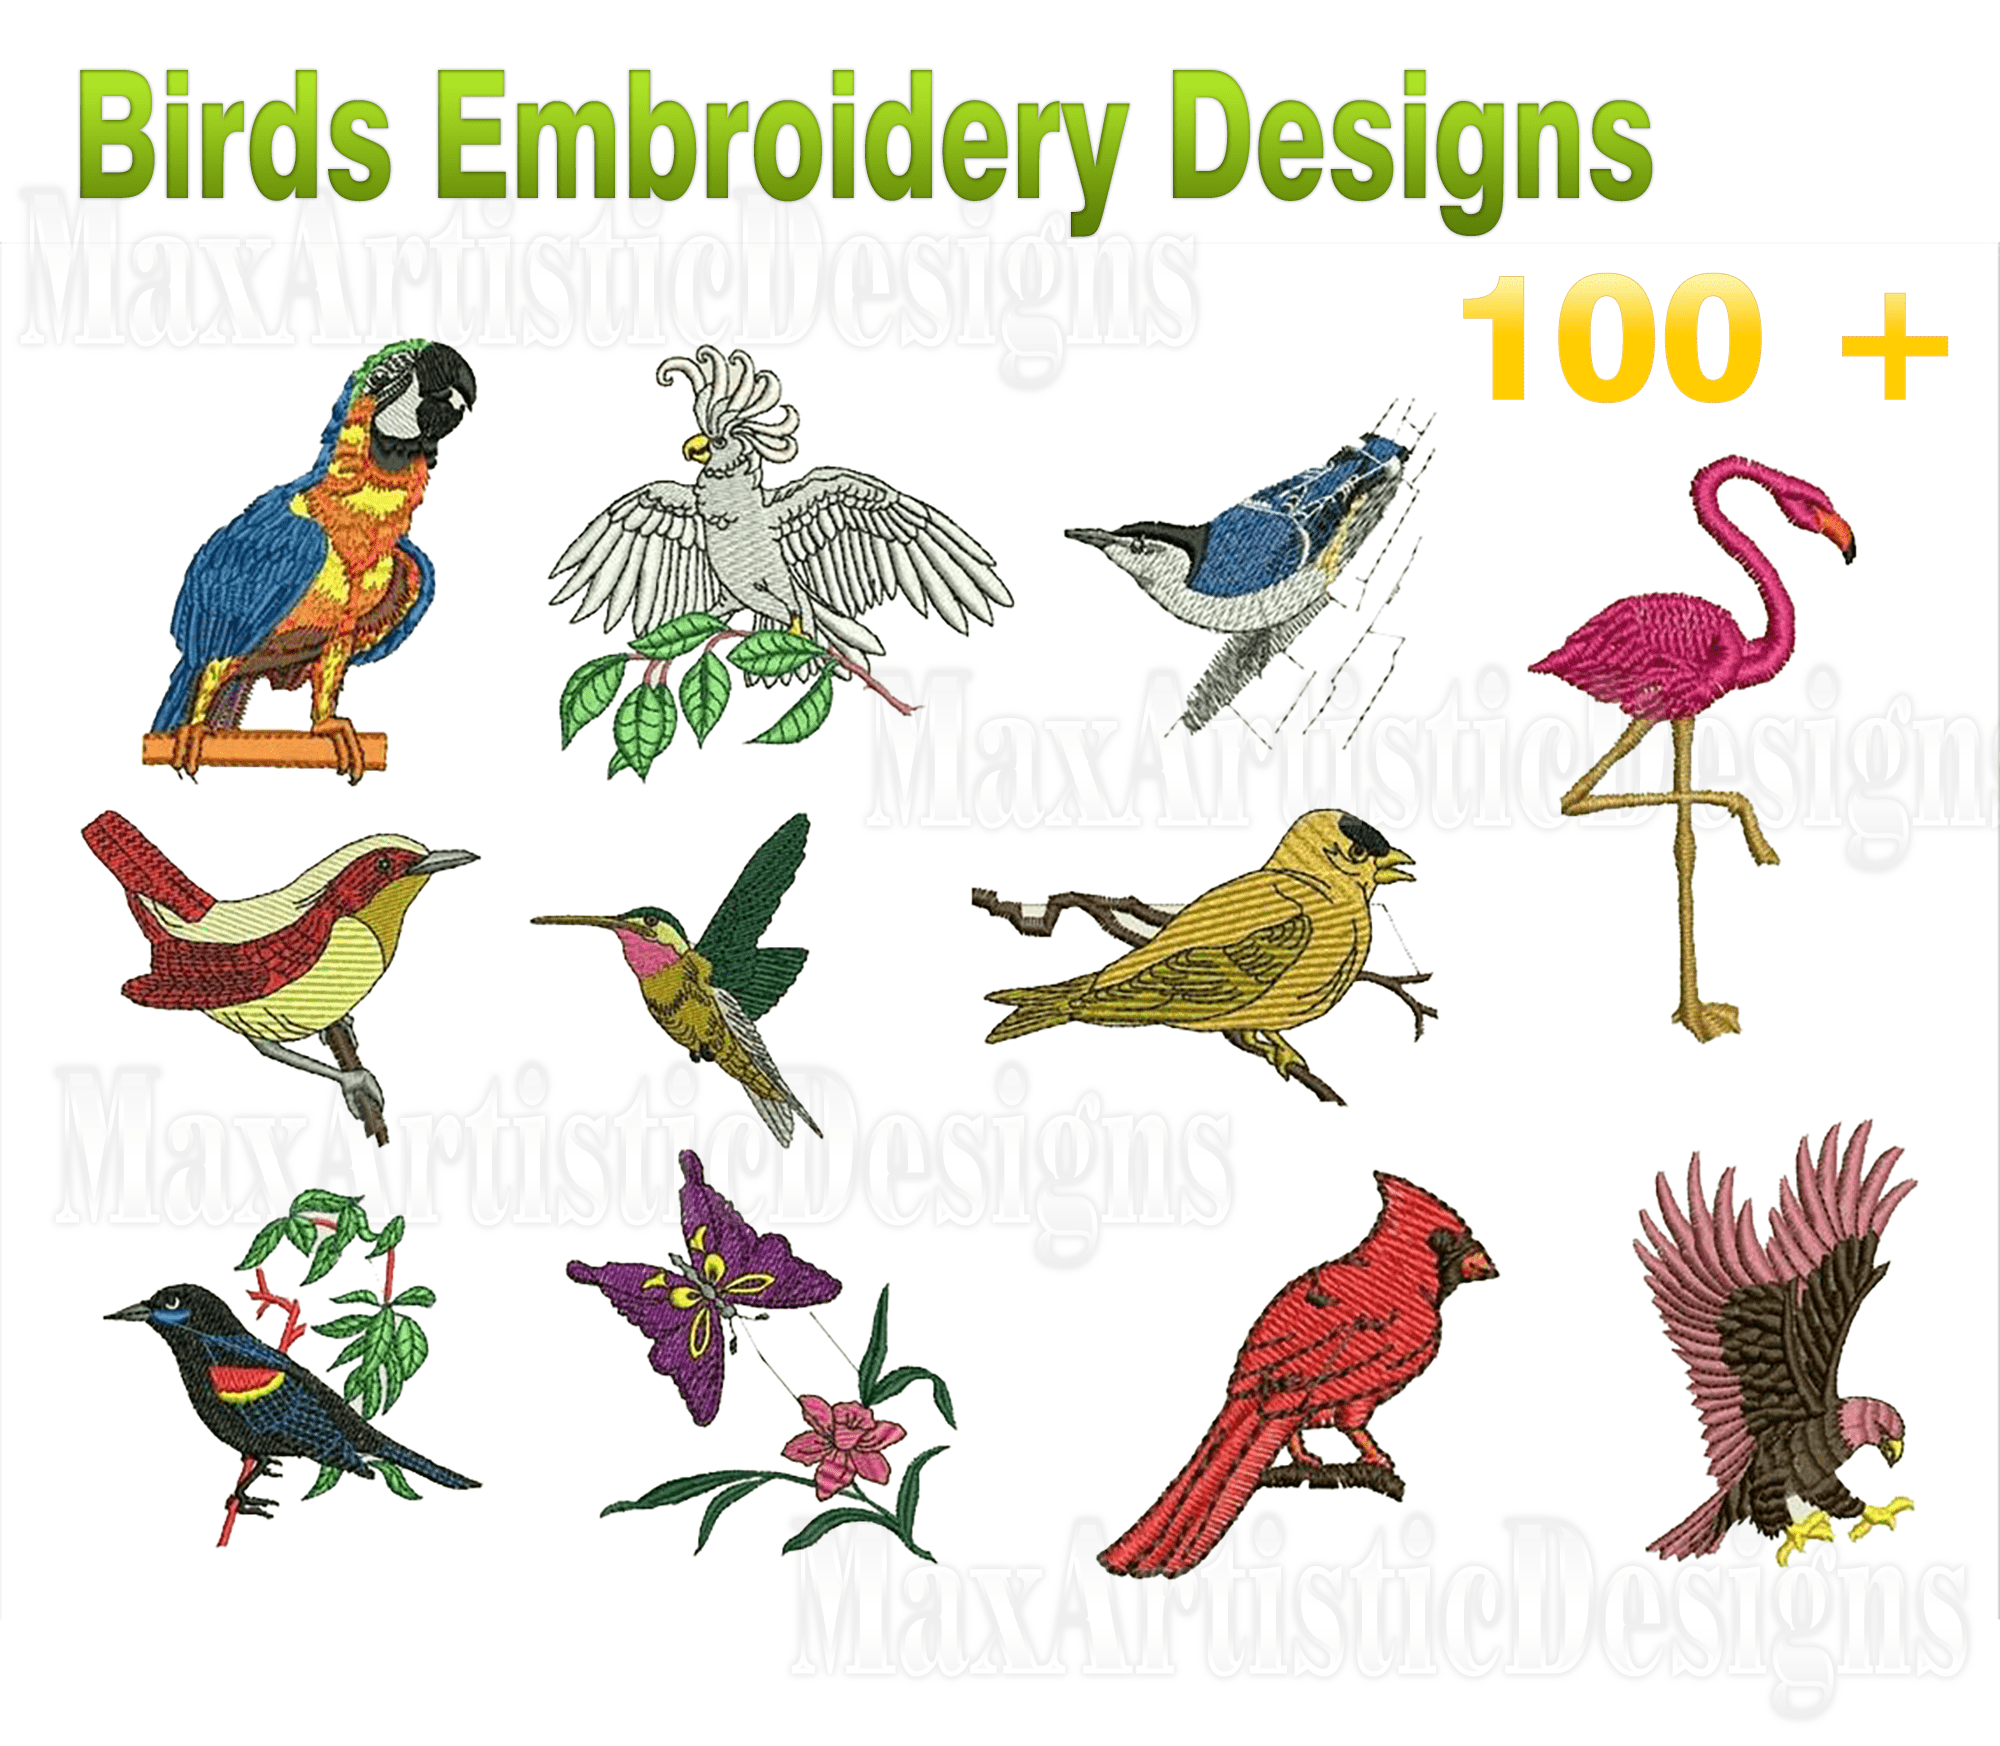 Oltre 100 modelli di ricamo di uccelli nei formati di file pes-hus